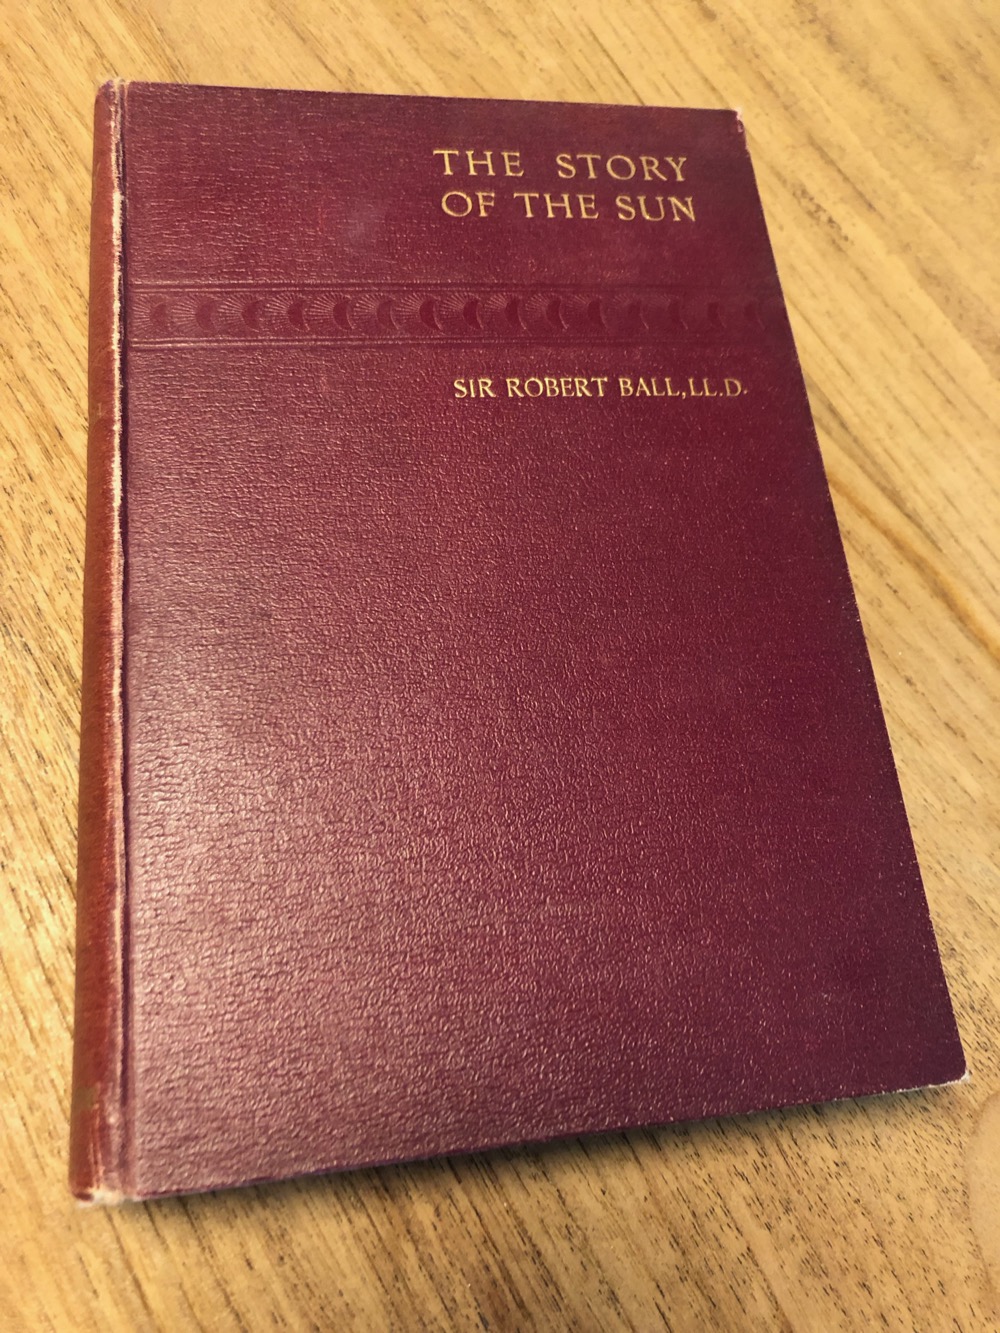 Je bekijkt nu Story of the sun – 1901